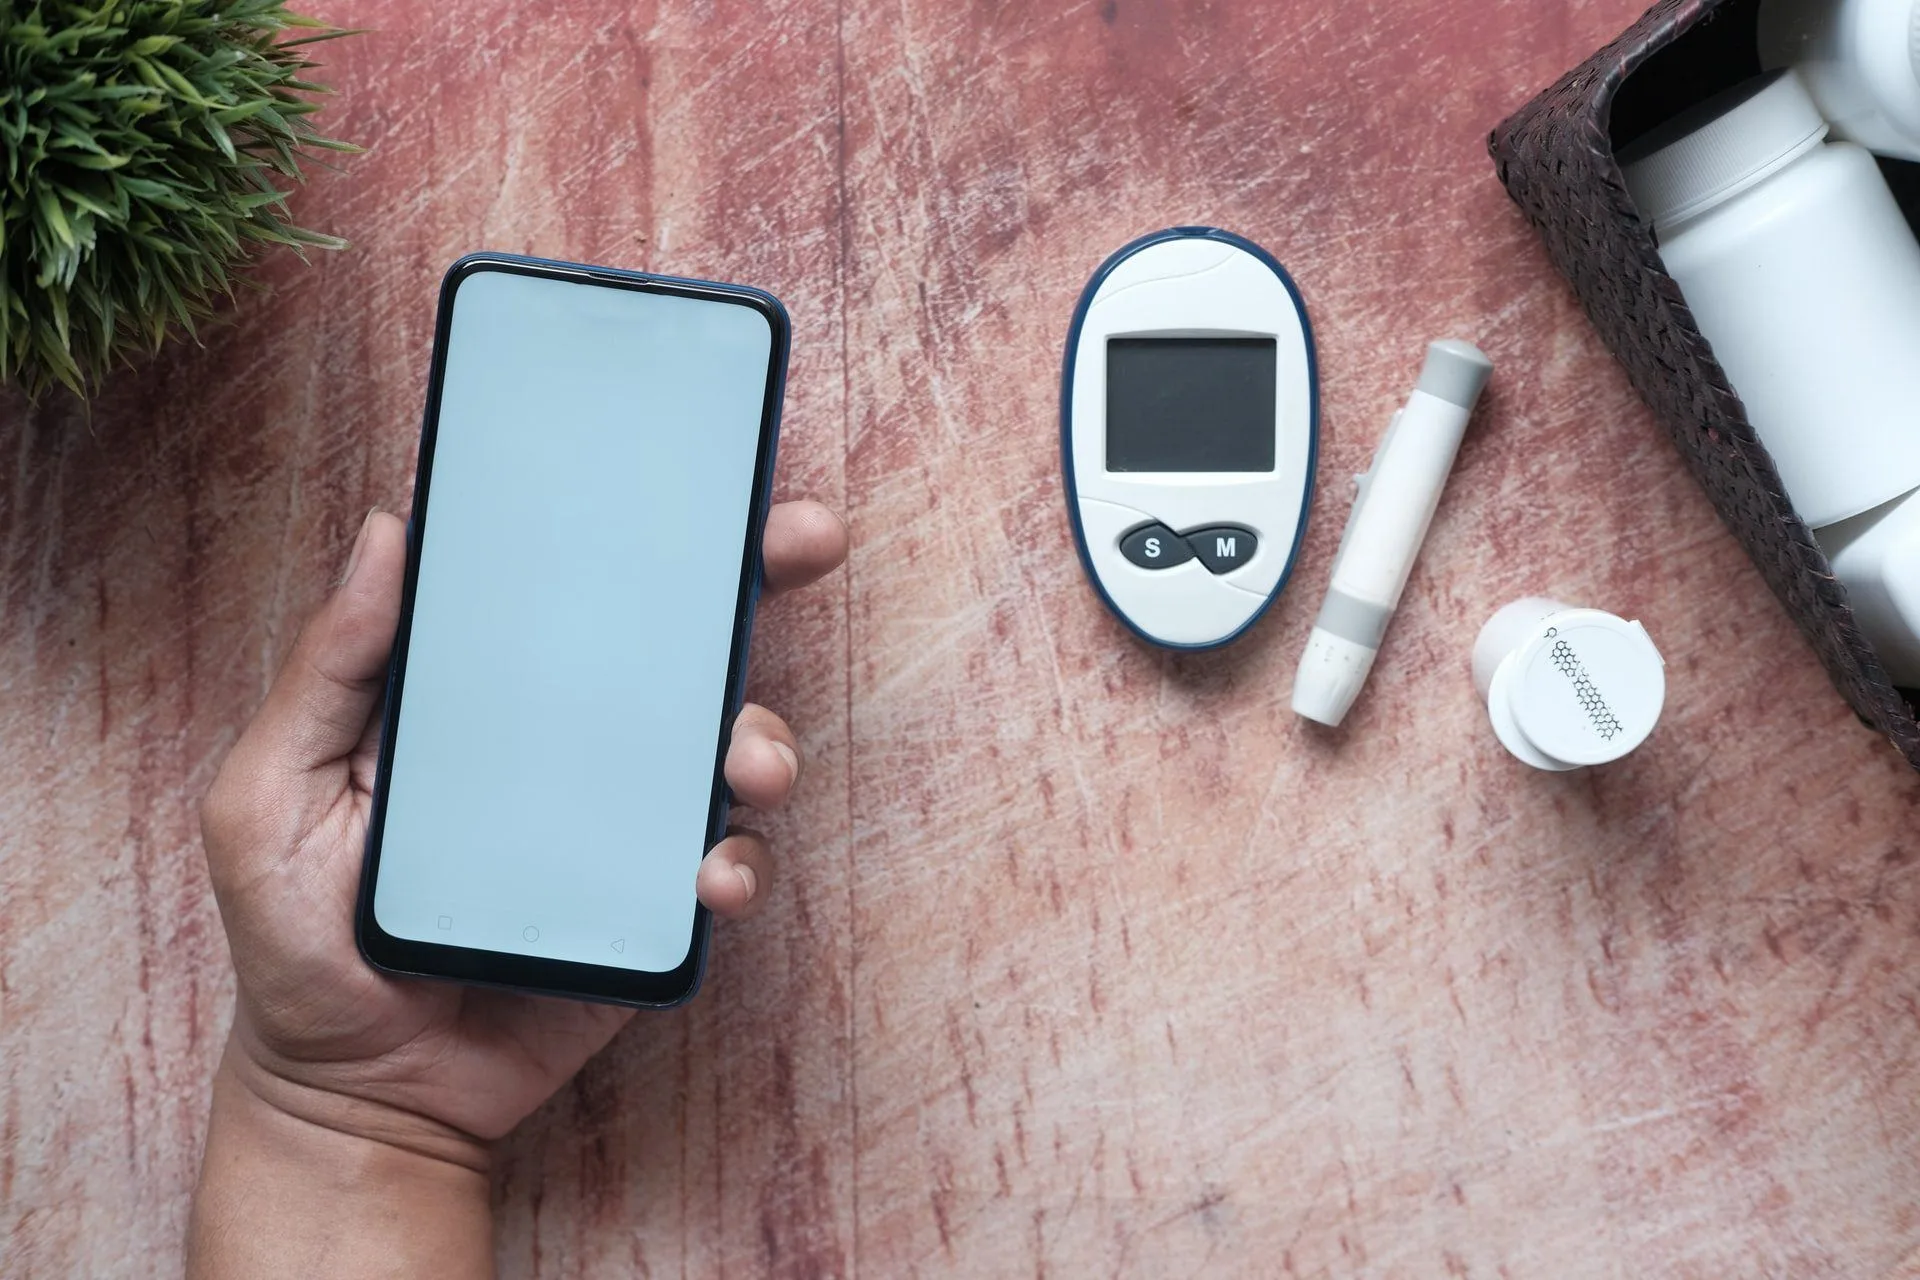 Pioglitazone: Diabetes Drug Cuts Dementia Risk in Half